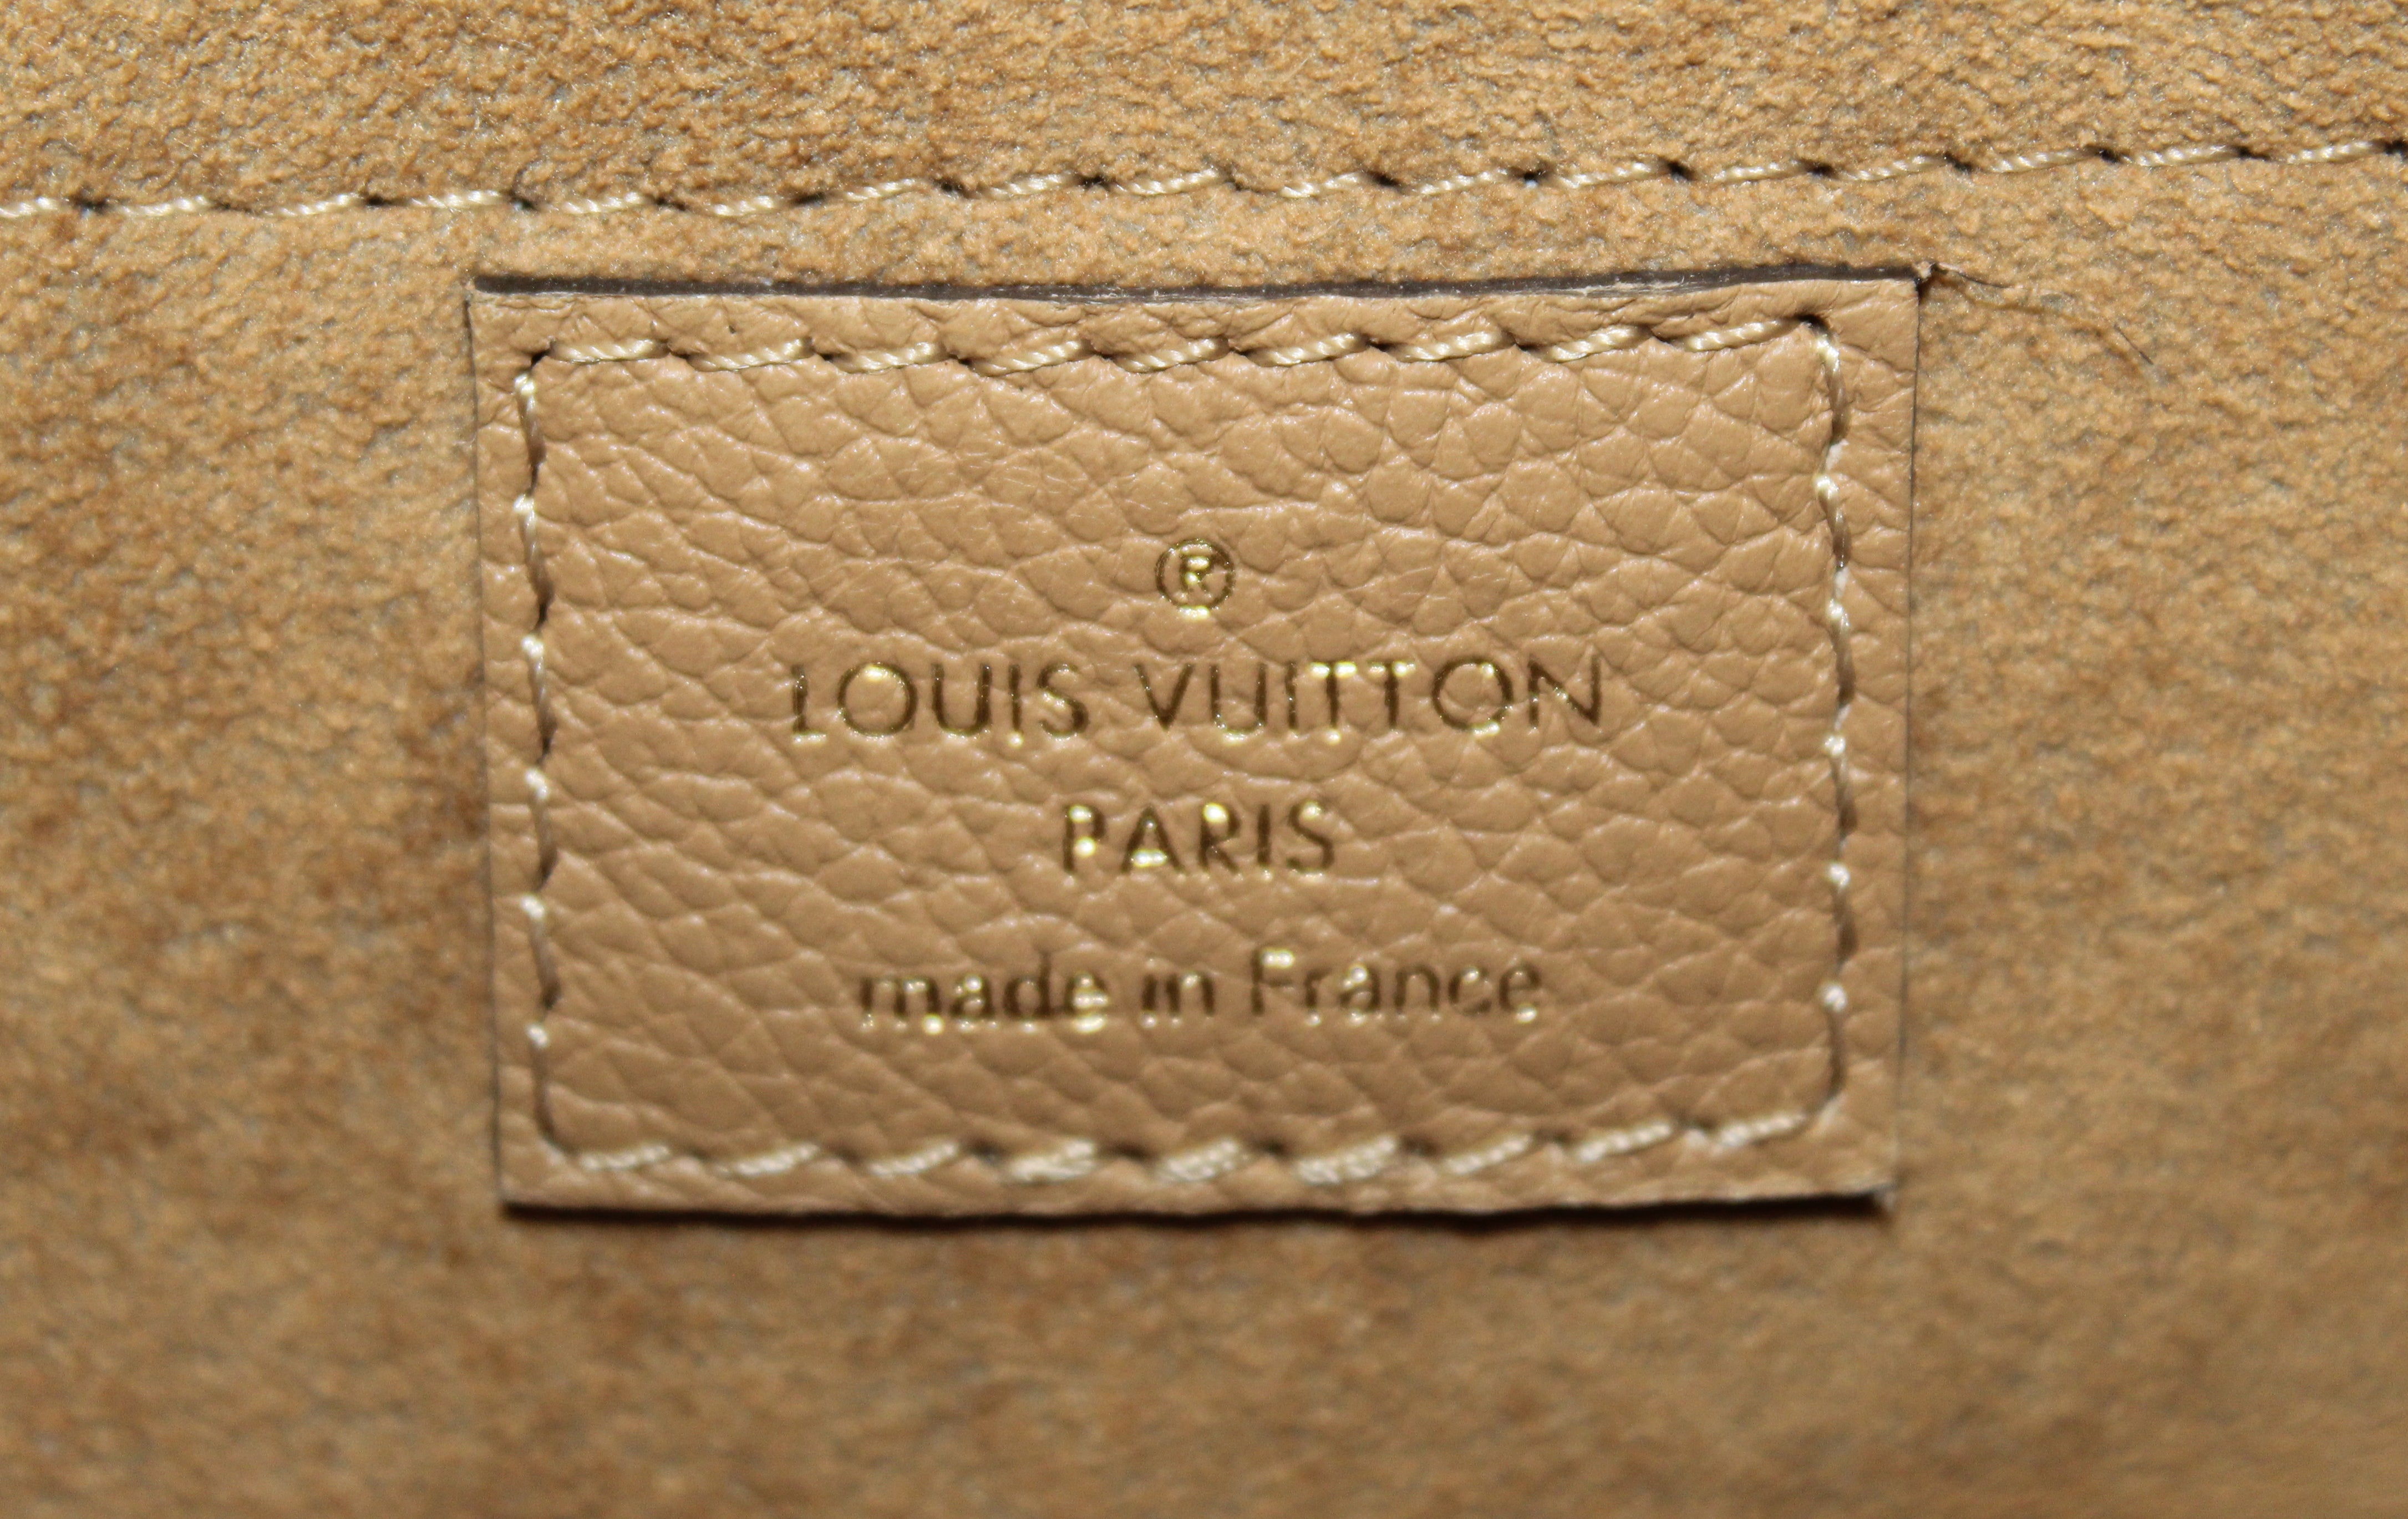 Initial Review of my Louis Vuitton Marignan Monogram Sesame